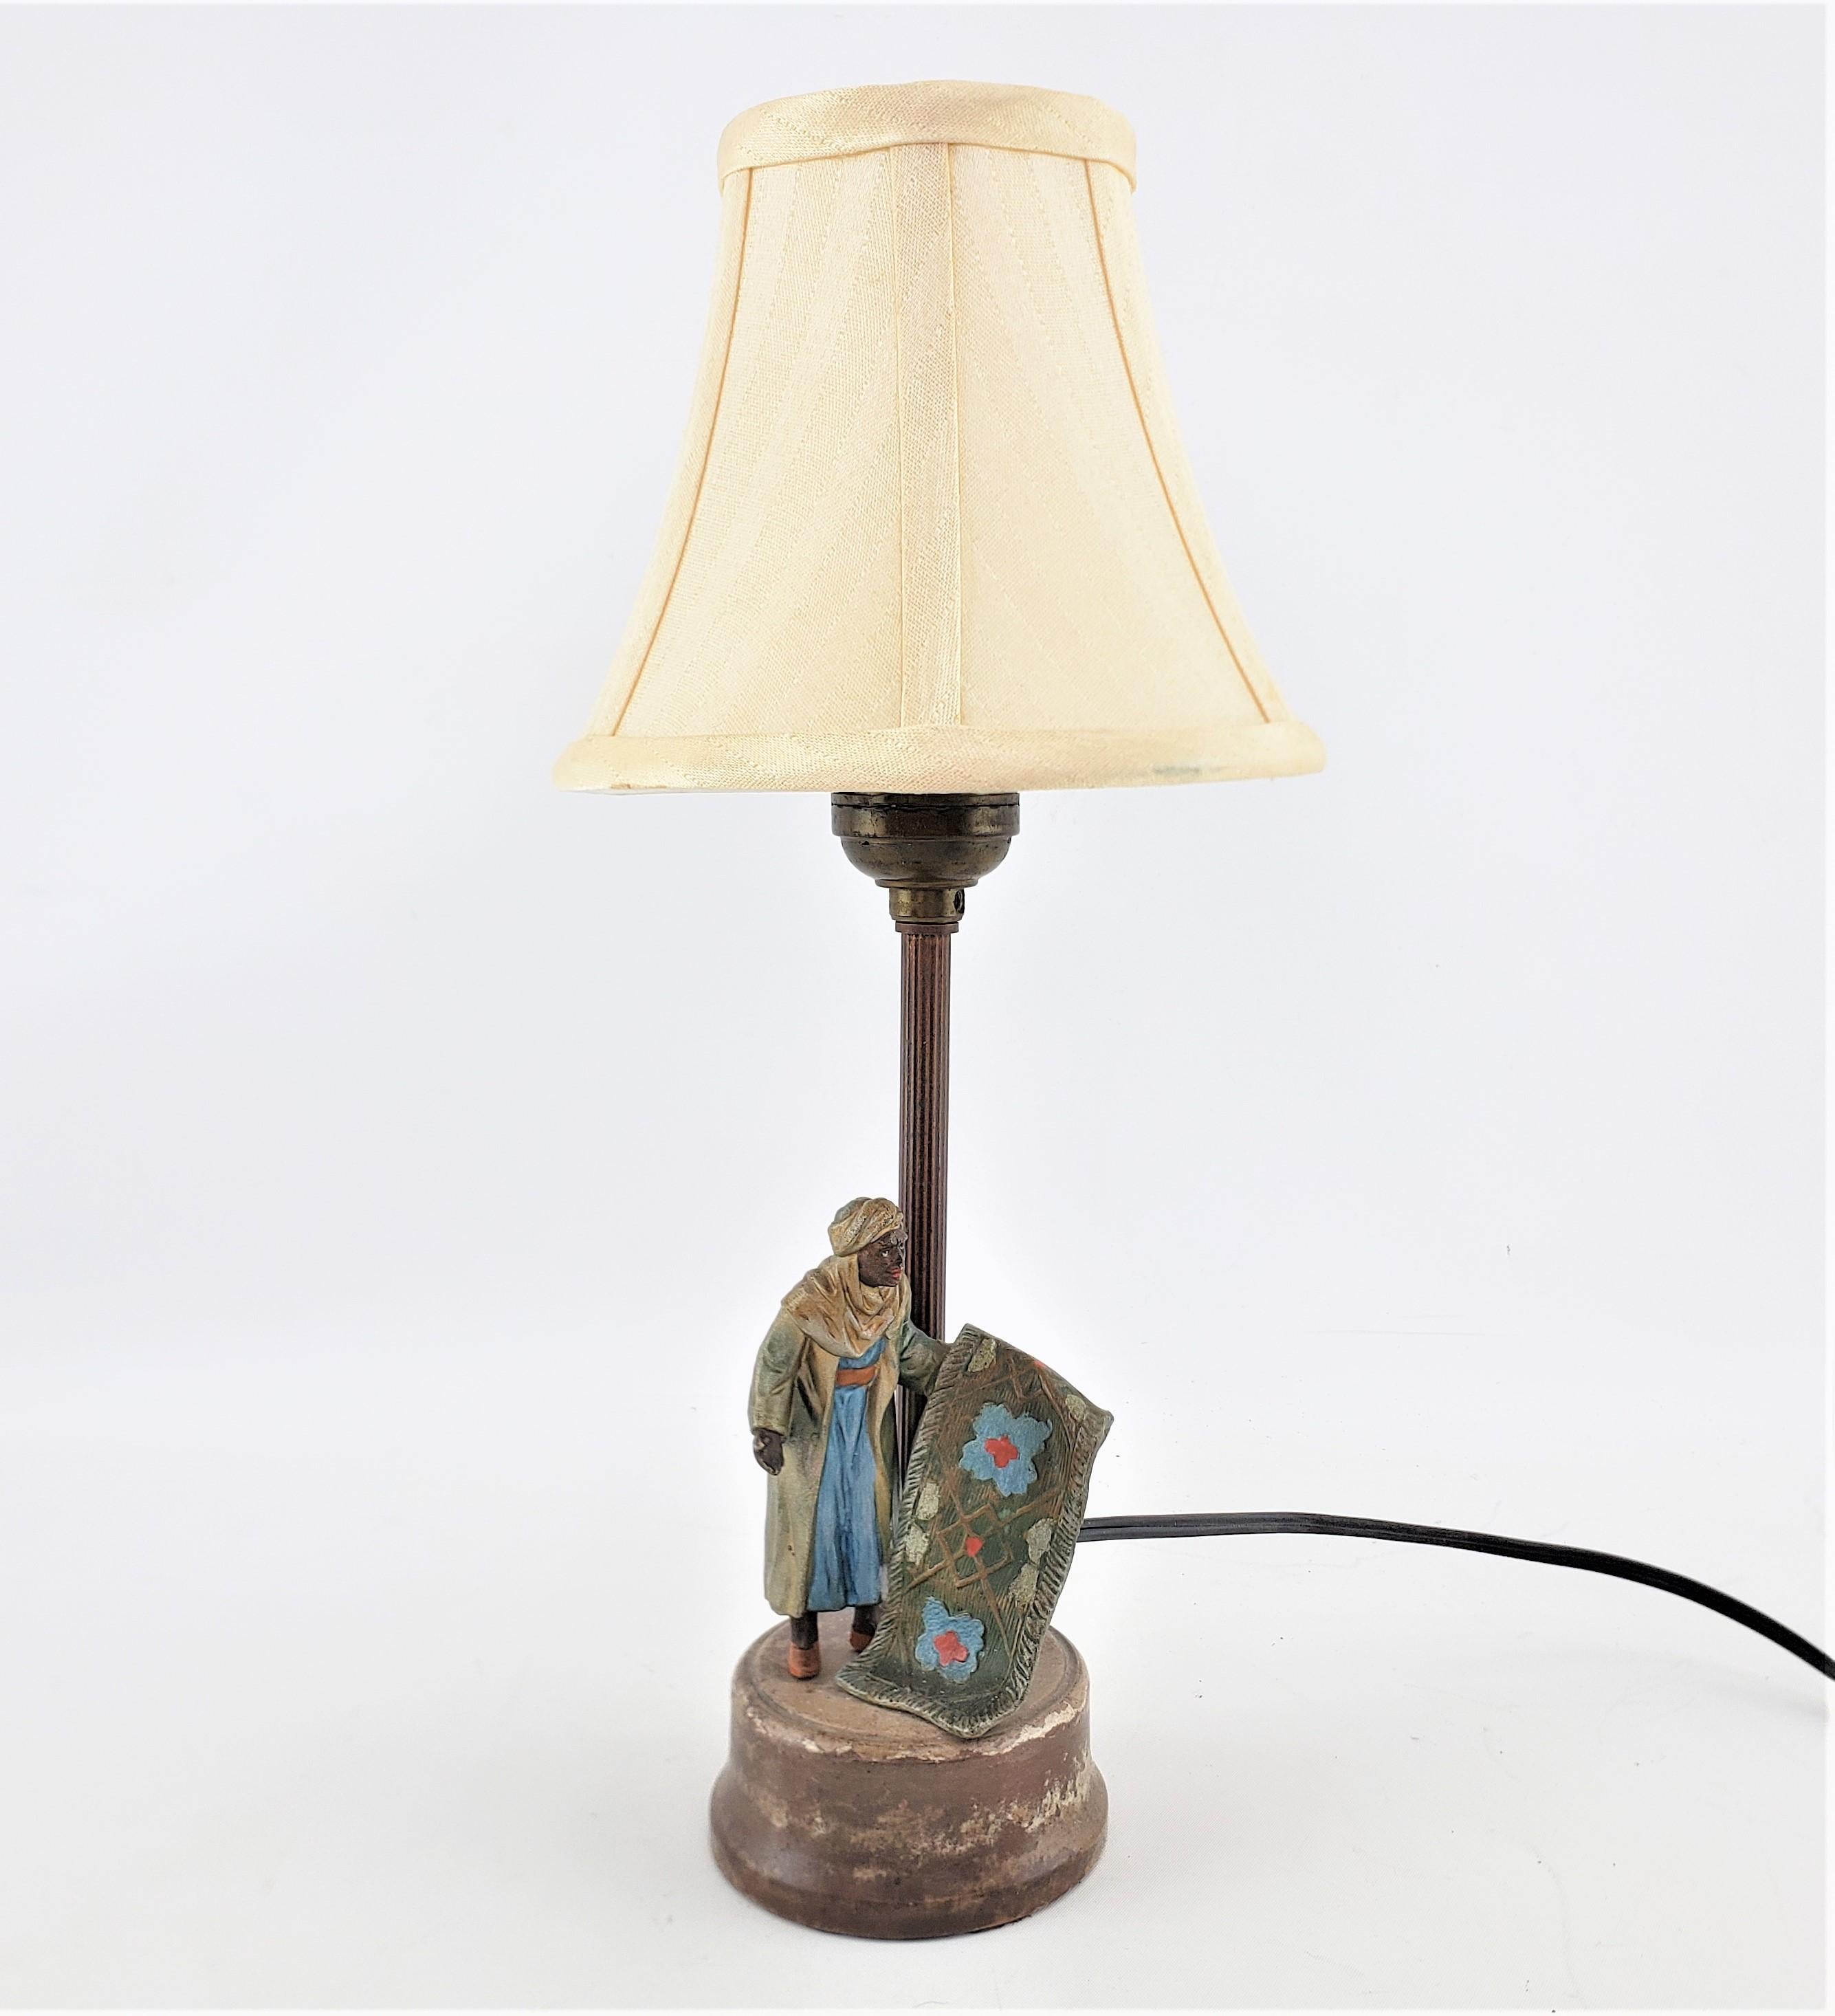 Diese kleine antike figurale Tischlampe ist unsigniert, stammt aber vermutlich aus Österreich und wurde um 1920 im Art-déco-Stil gefertigt. Der Sockel der Lampe besteht aus gegossenem Zinn, das im realistischen Stil kalt bemalt wurde. Die Figur